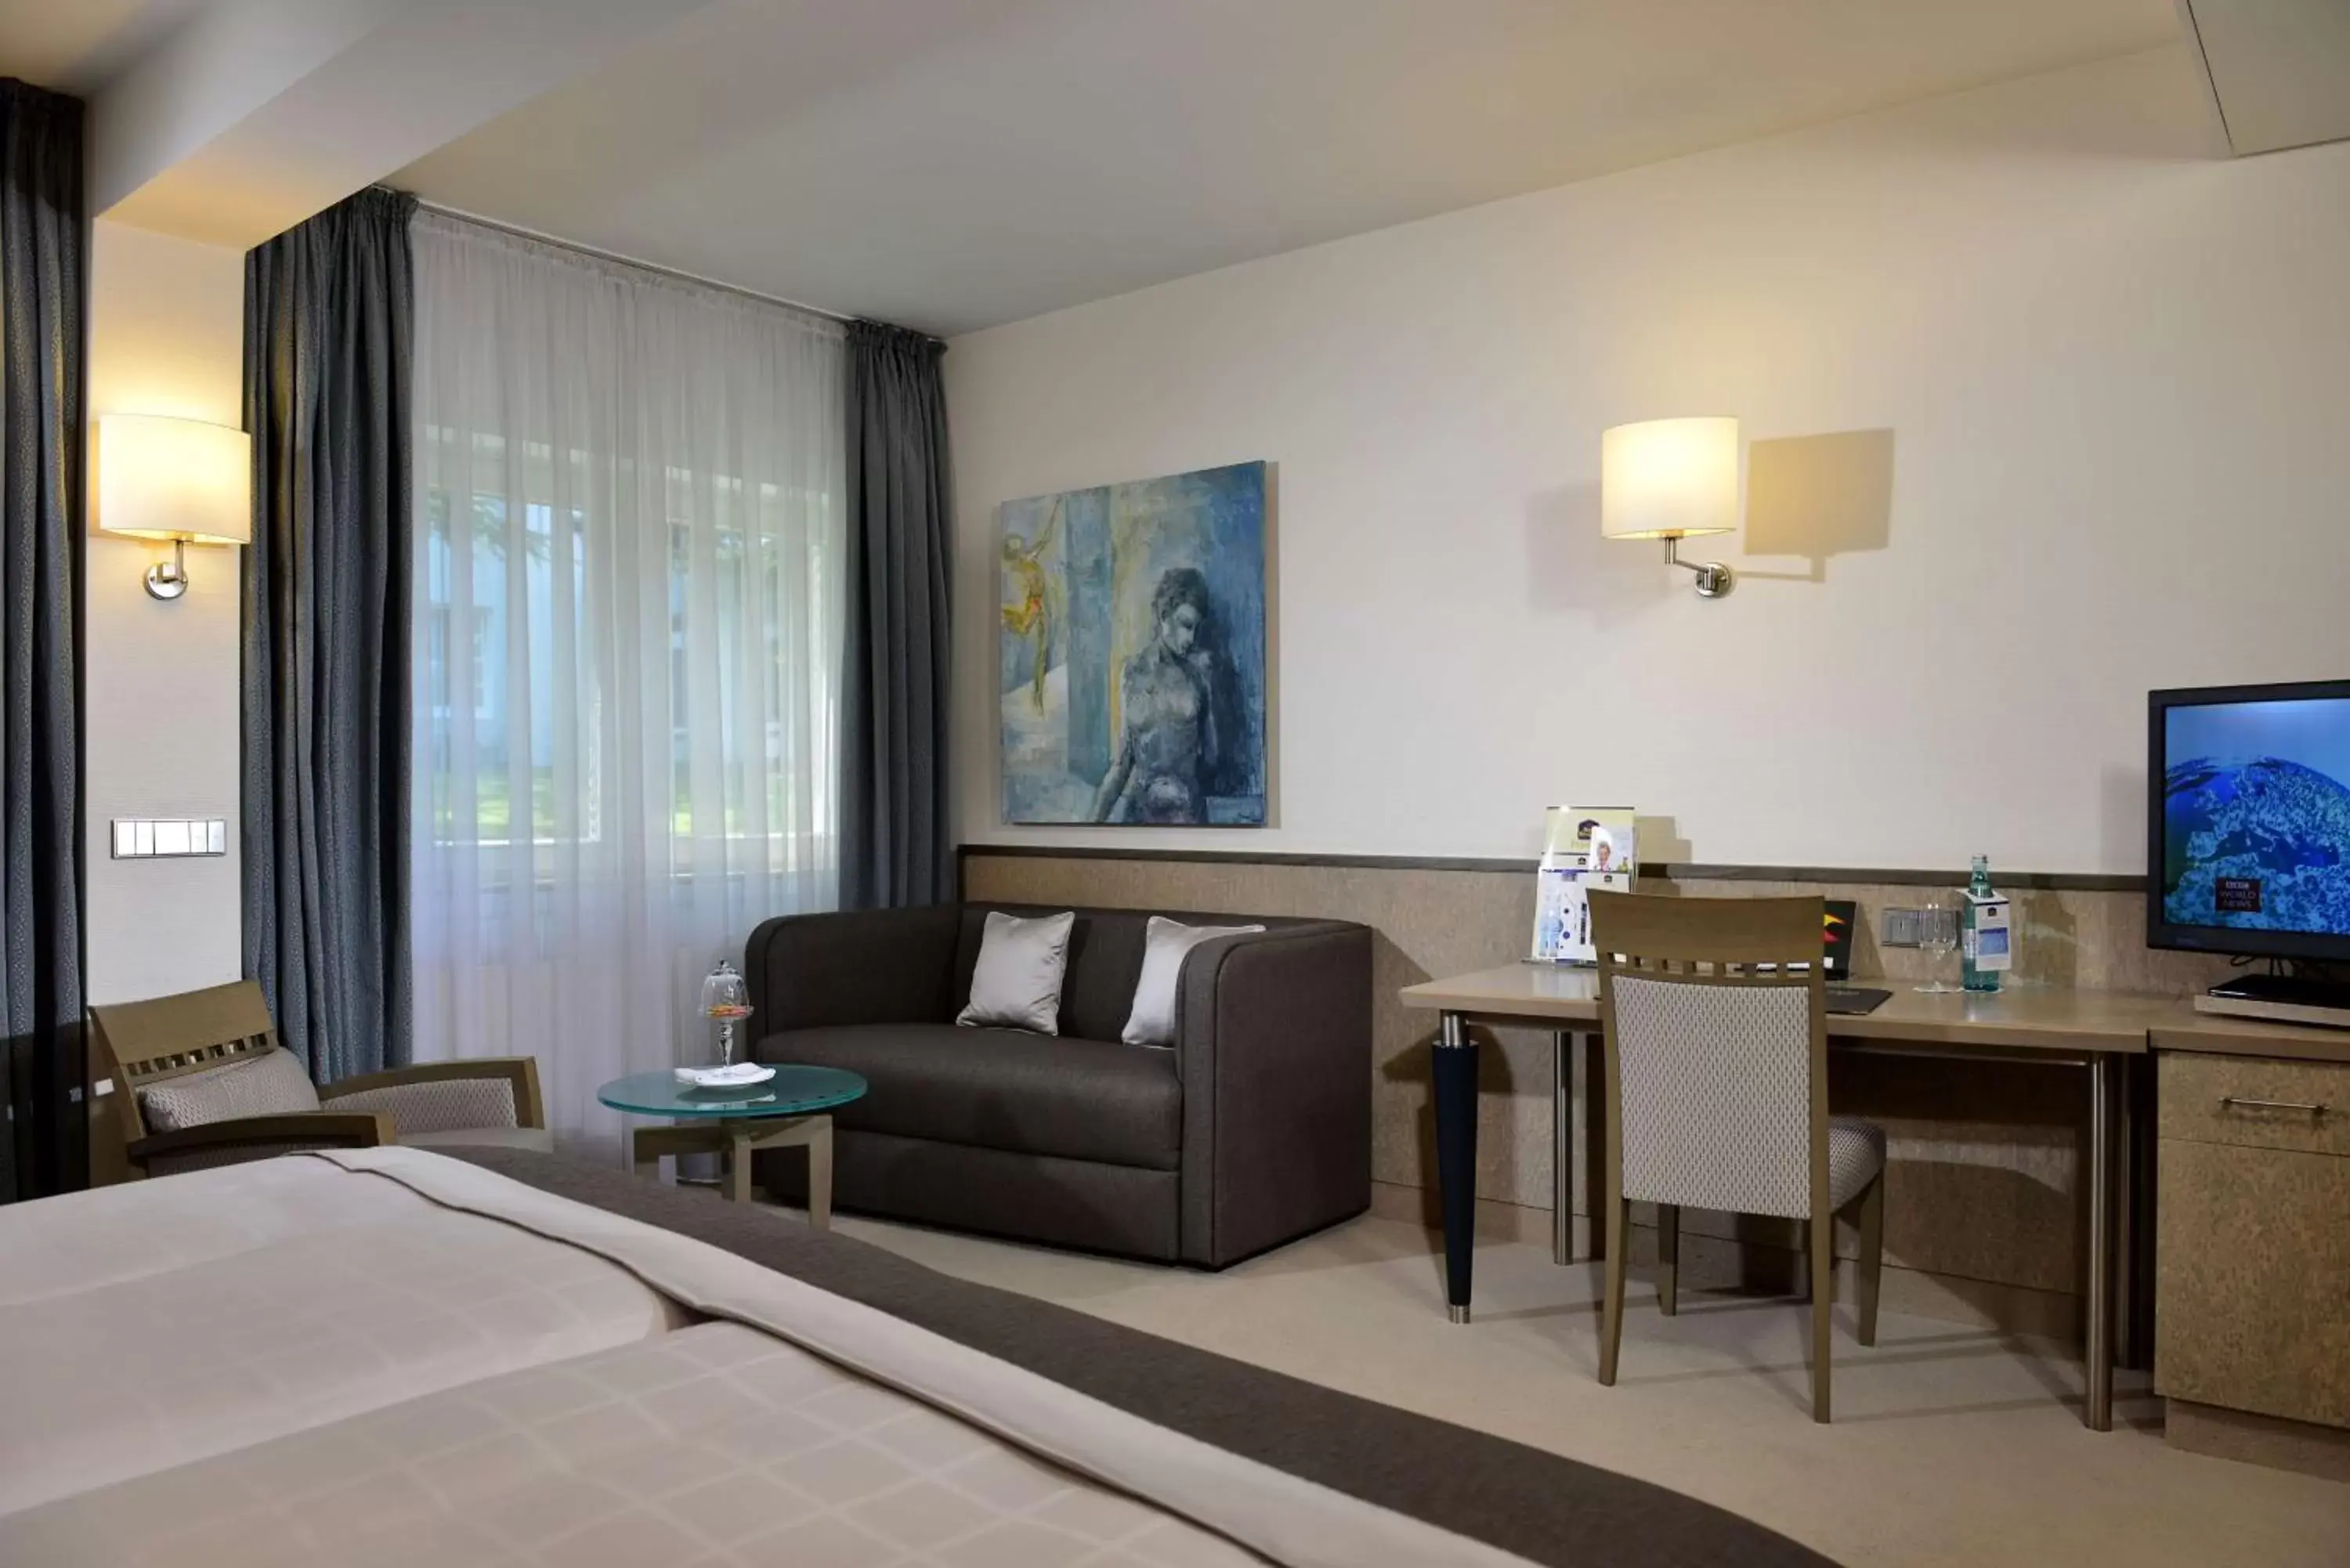 Bedroom, Seating Area in Best Western Premier Parkhotel Kronsberg